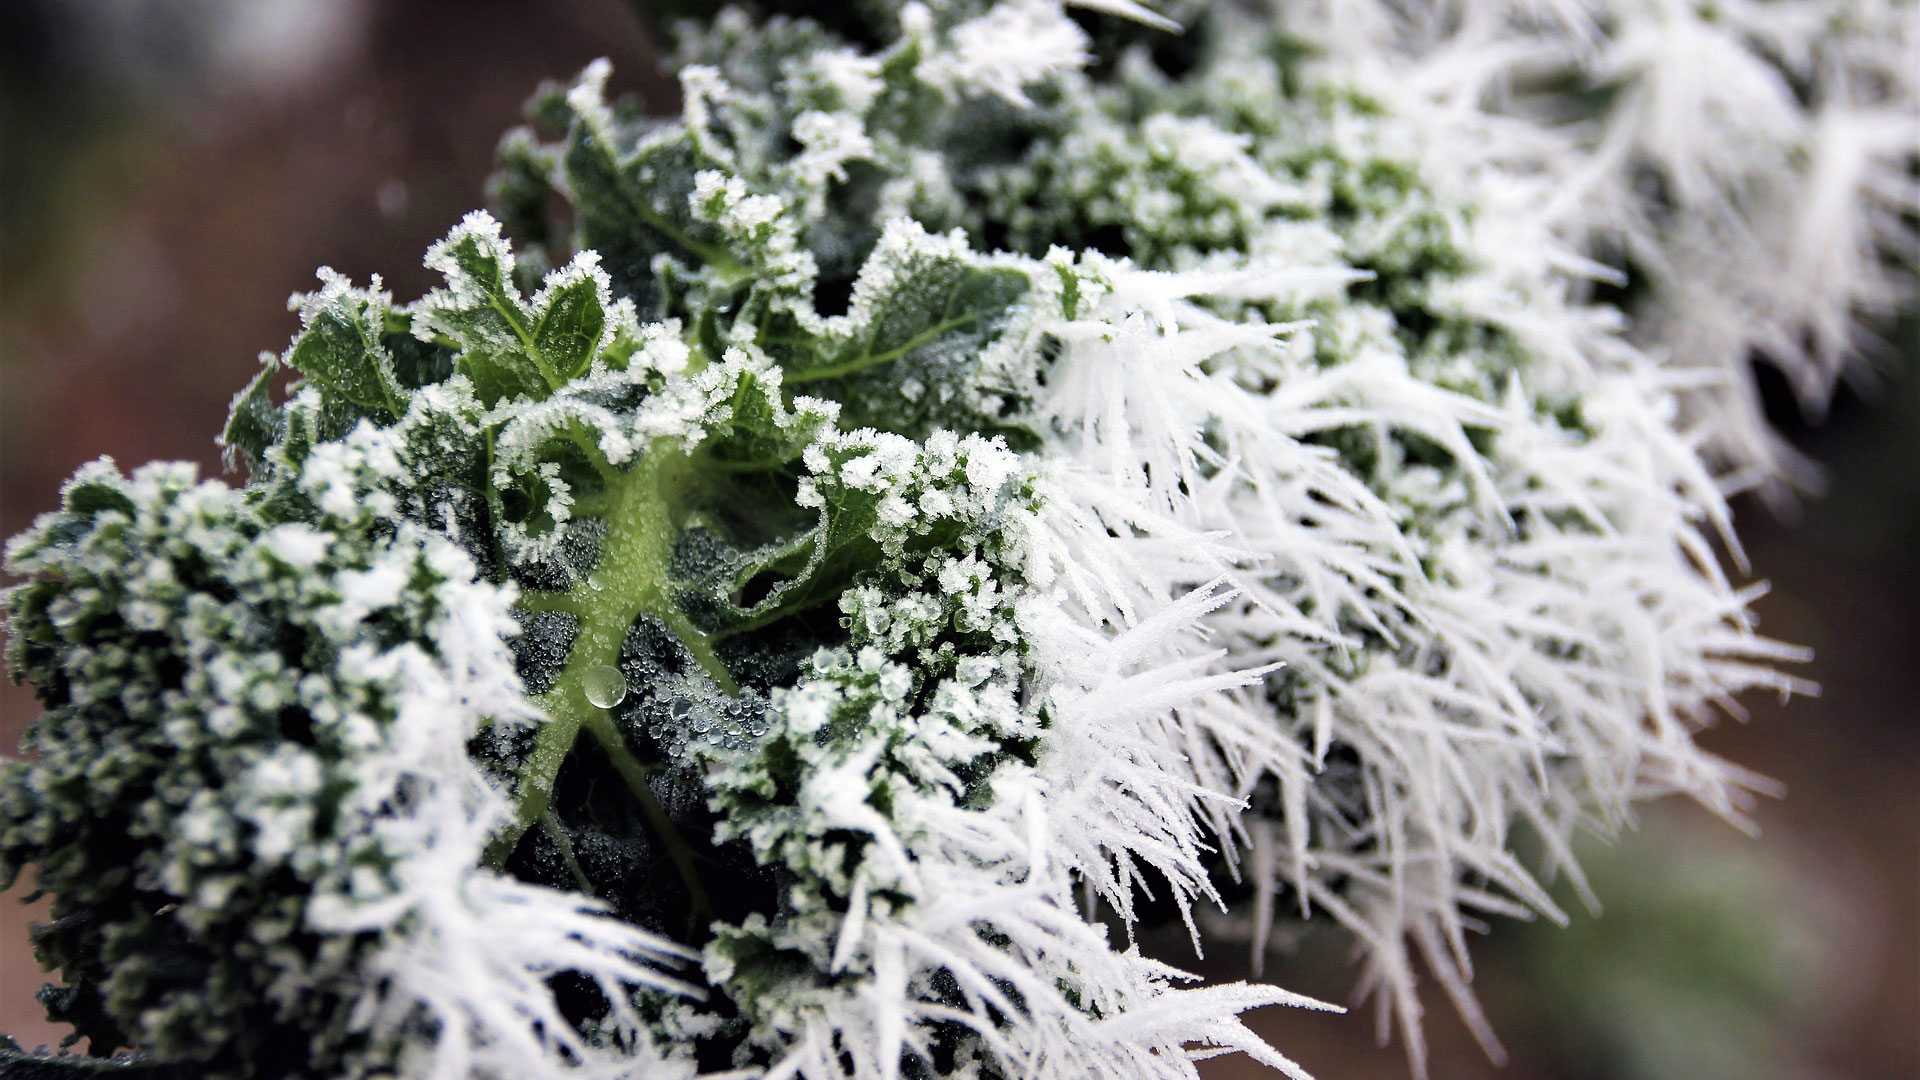 Federkohl mit Frost, Bild von martaposemuckel auf Pixabay